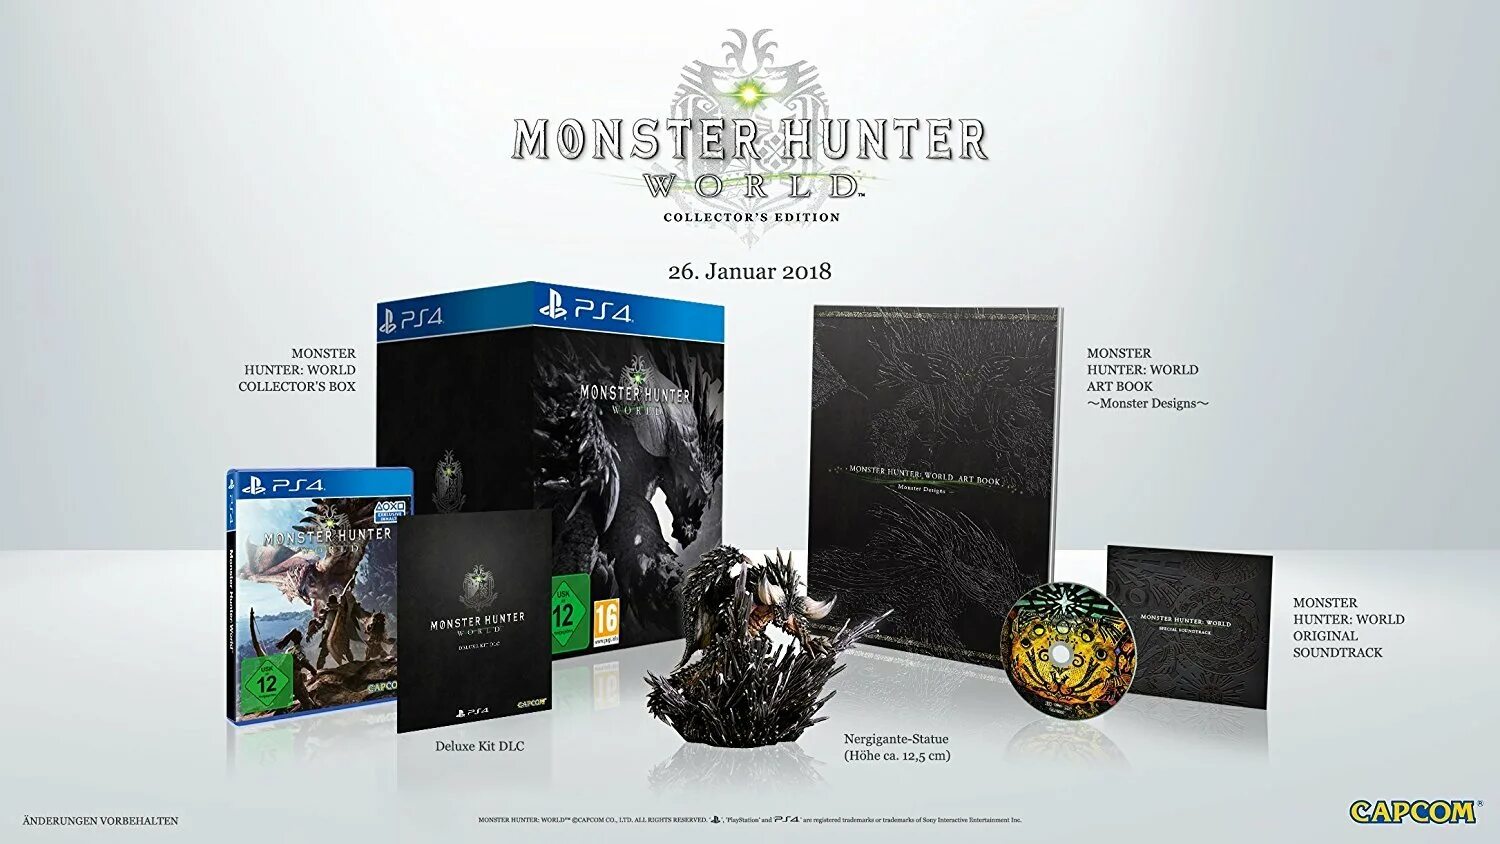 Monster Hunter Collector's Edition. Монстр Хантер Делюкс. Monster Hunter World isborn коллекционное издание. Иксбокс монстр.